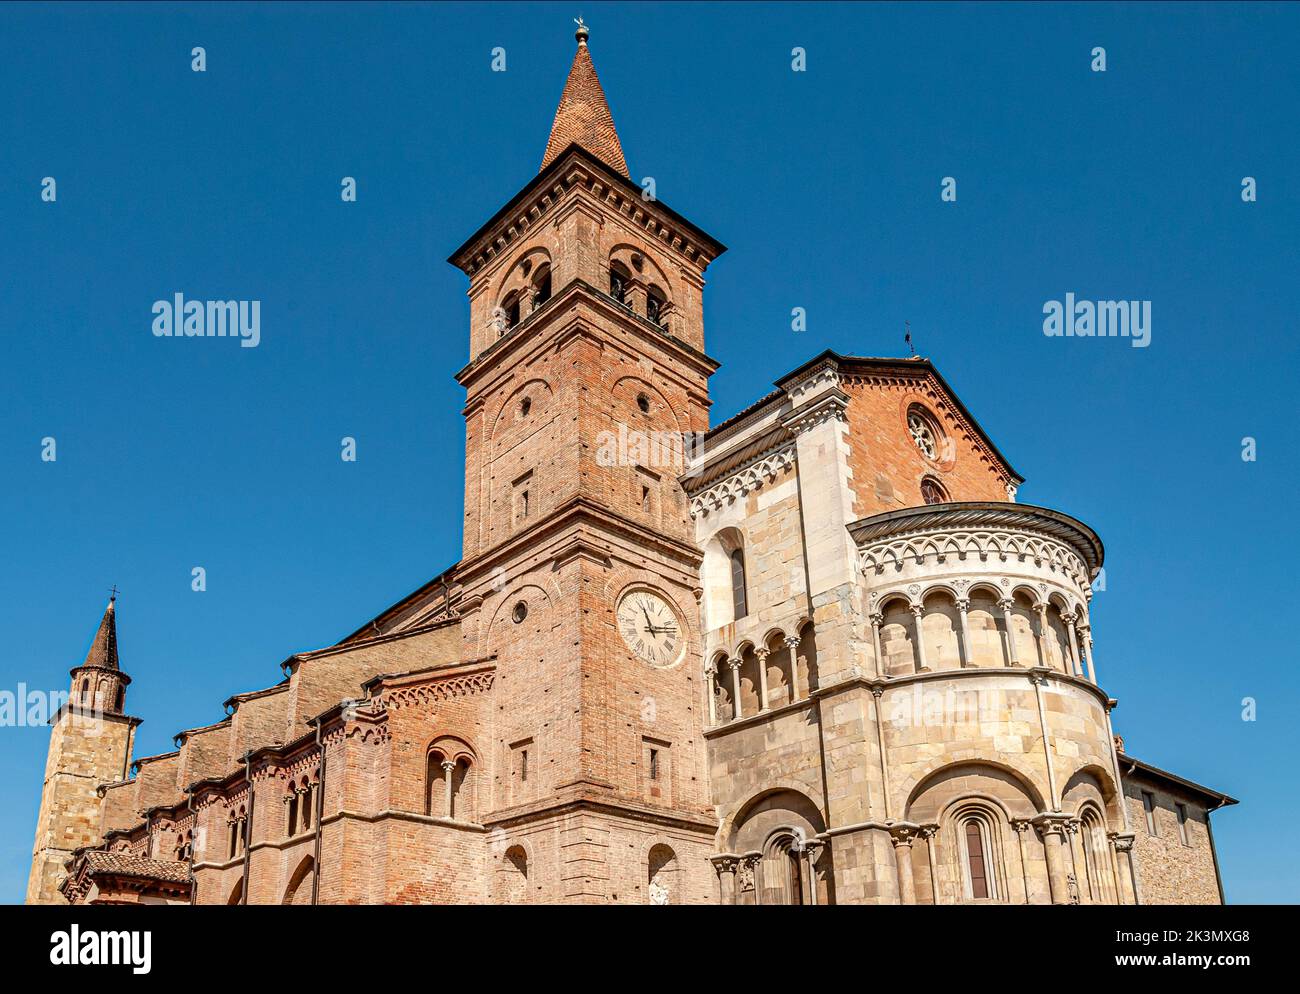 Il Duomo è l'edificio più famoso di Fidenza, che risale al 12th° secolo ed è dedicato a Domnino di Fidenza, che fu martirizzato per ordine o Foto Stock